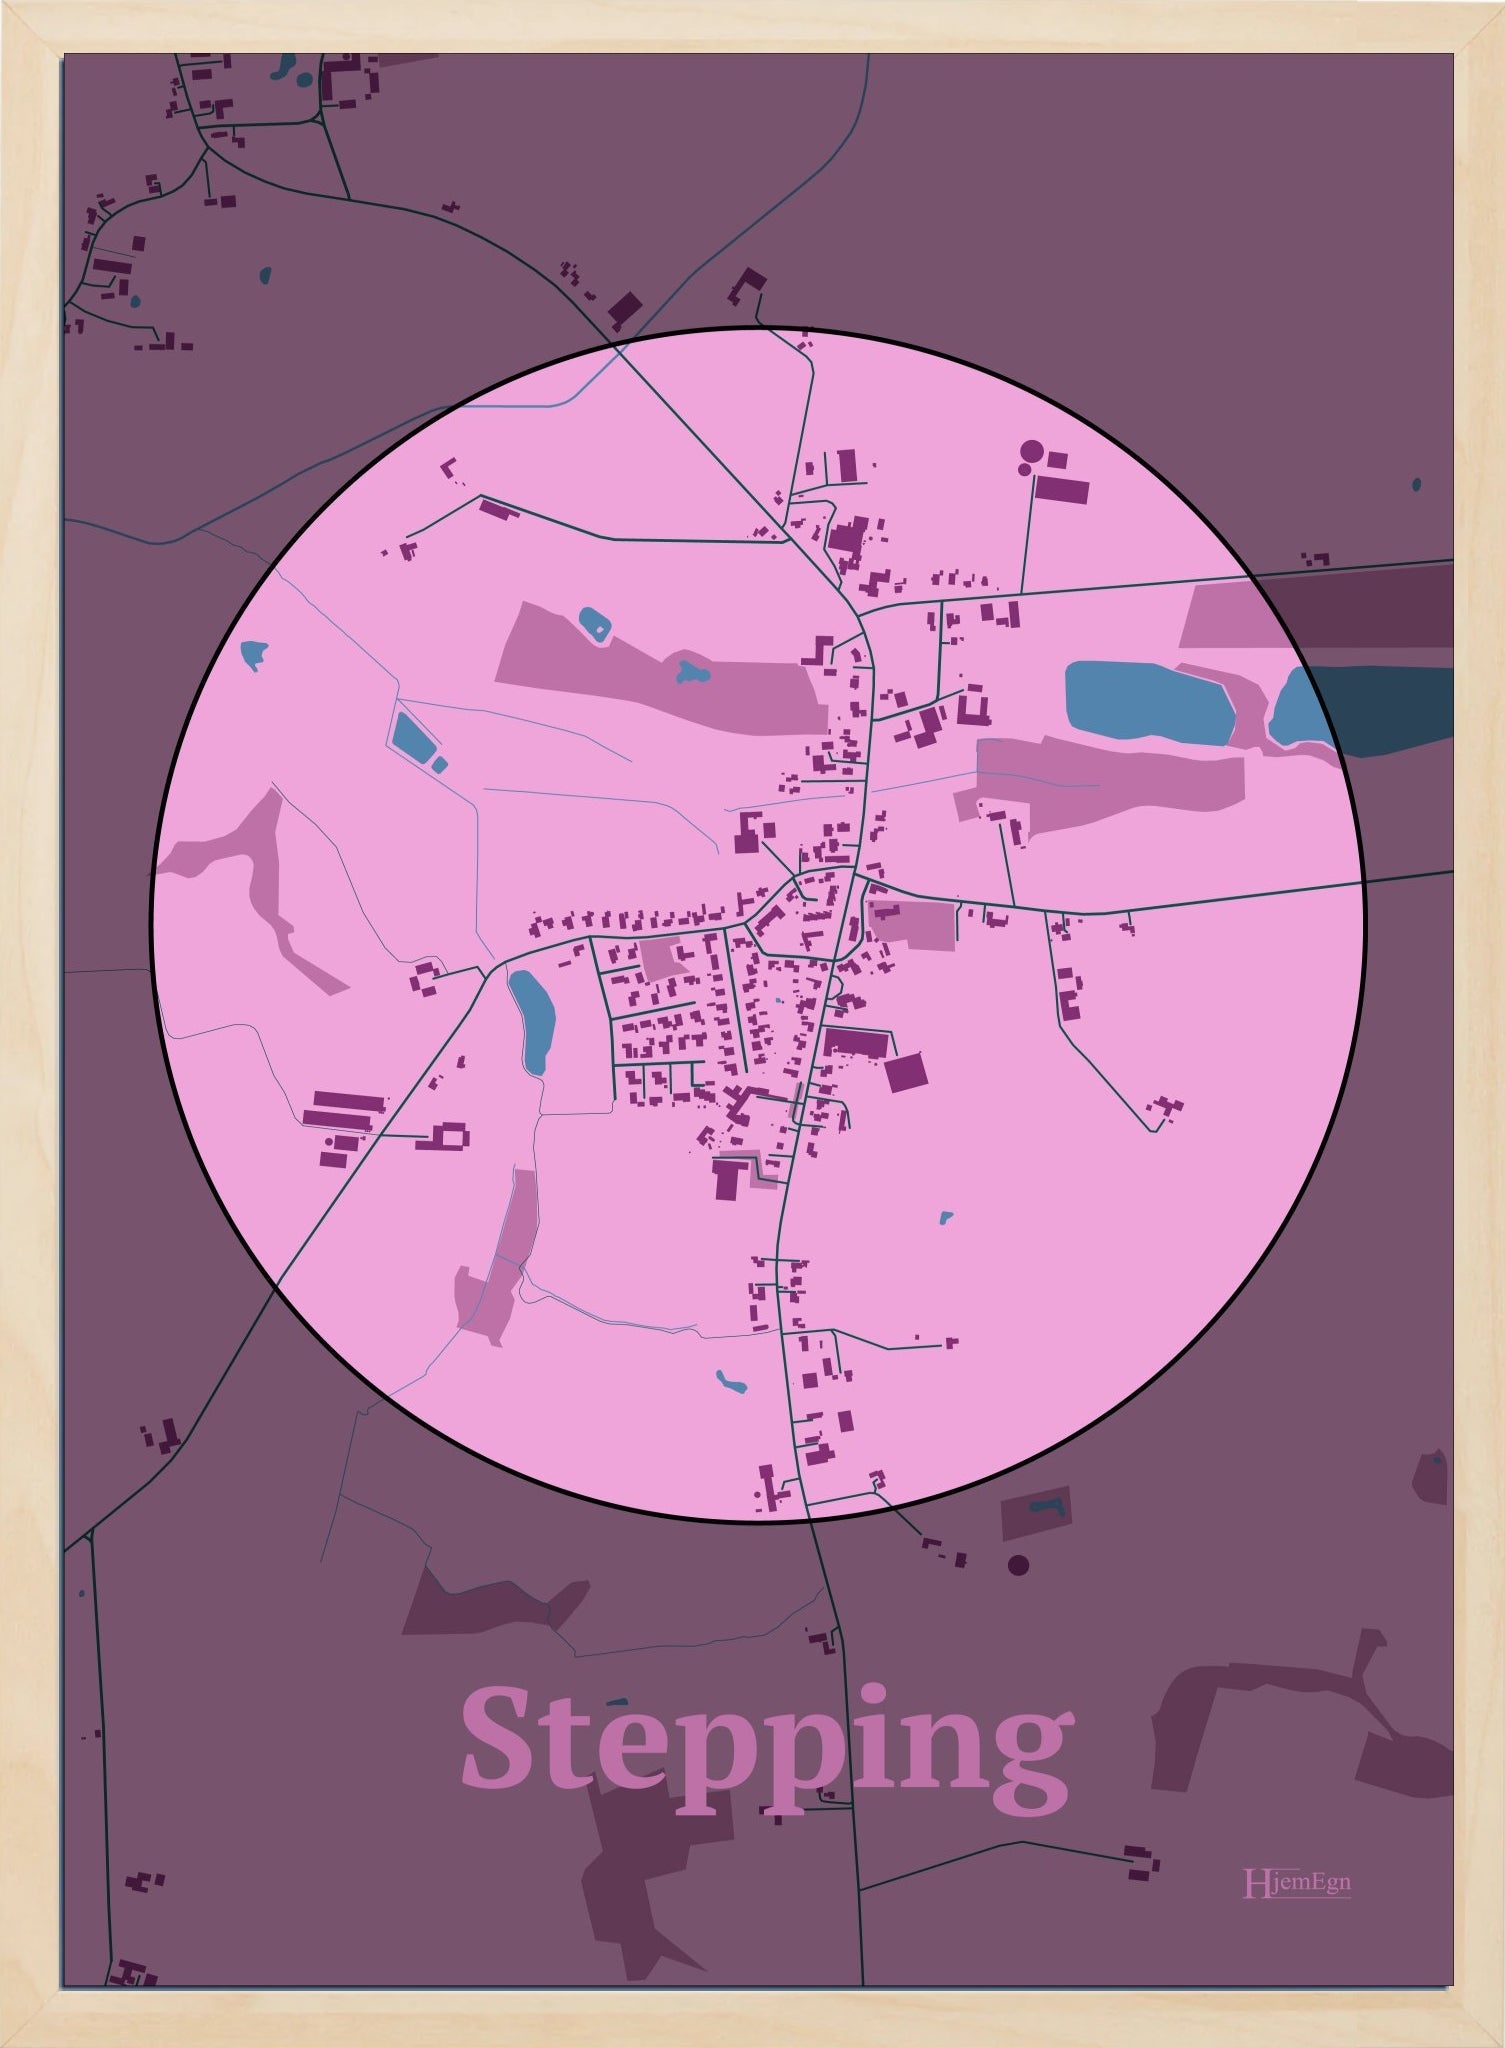 Stepping plakat i farve pastel rød og HjemEgn.dk design centrum. Design bykort for Stepping